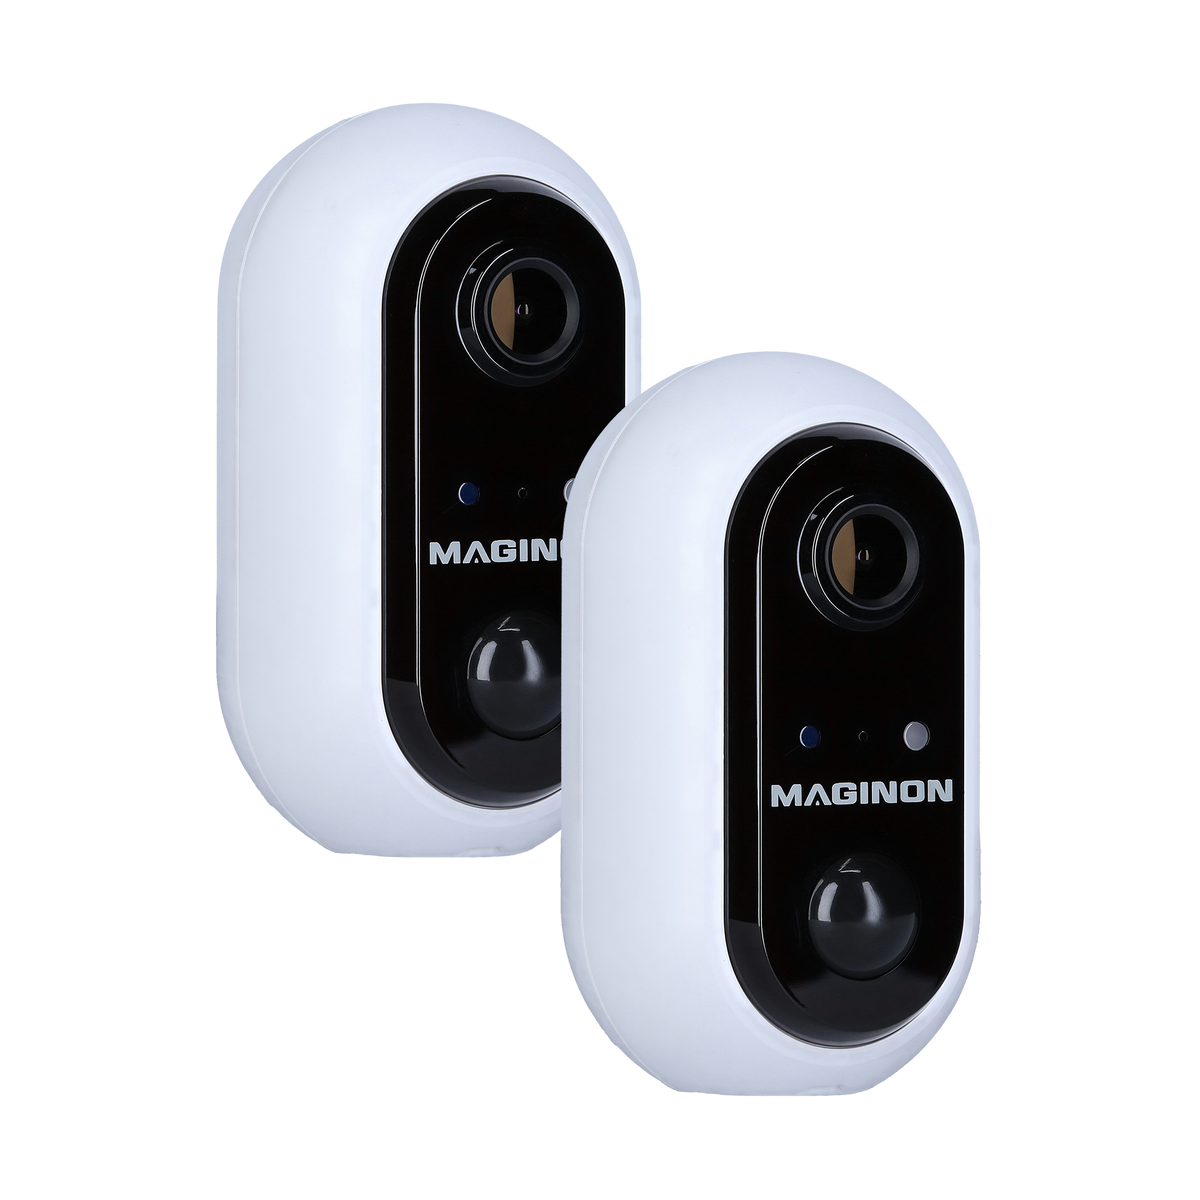 Caméra de surveillance autonome communicante ID300S - ID.Cam - ID300S